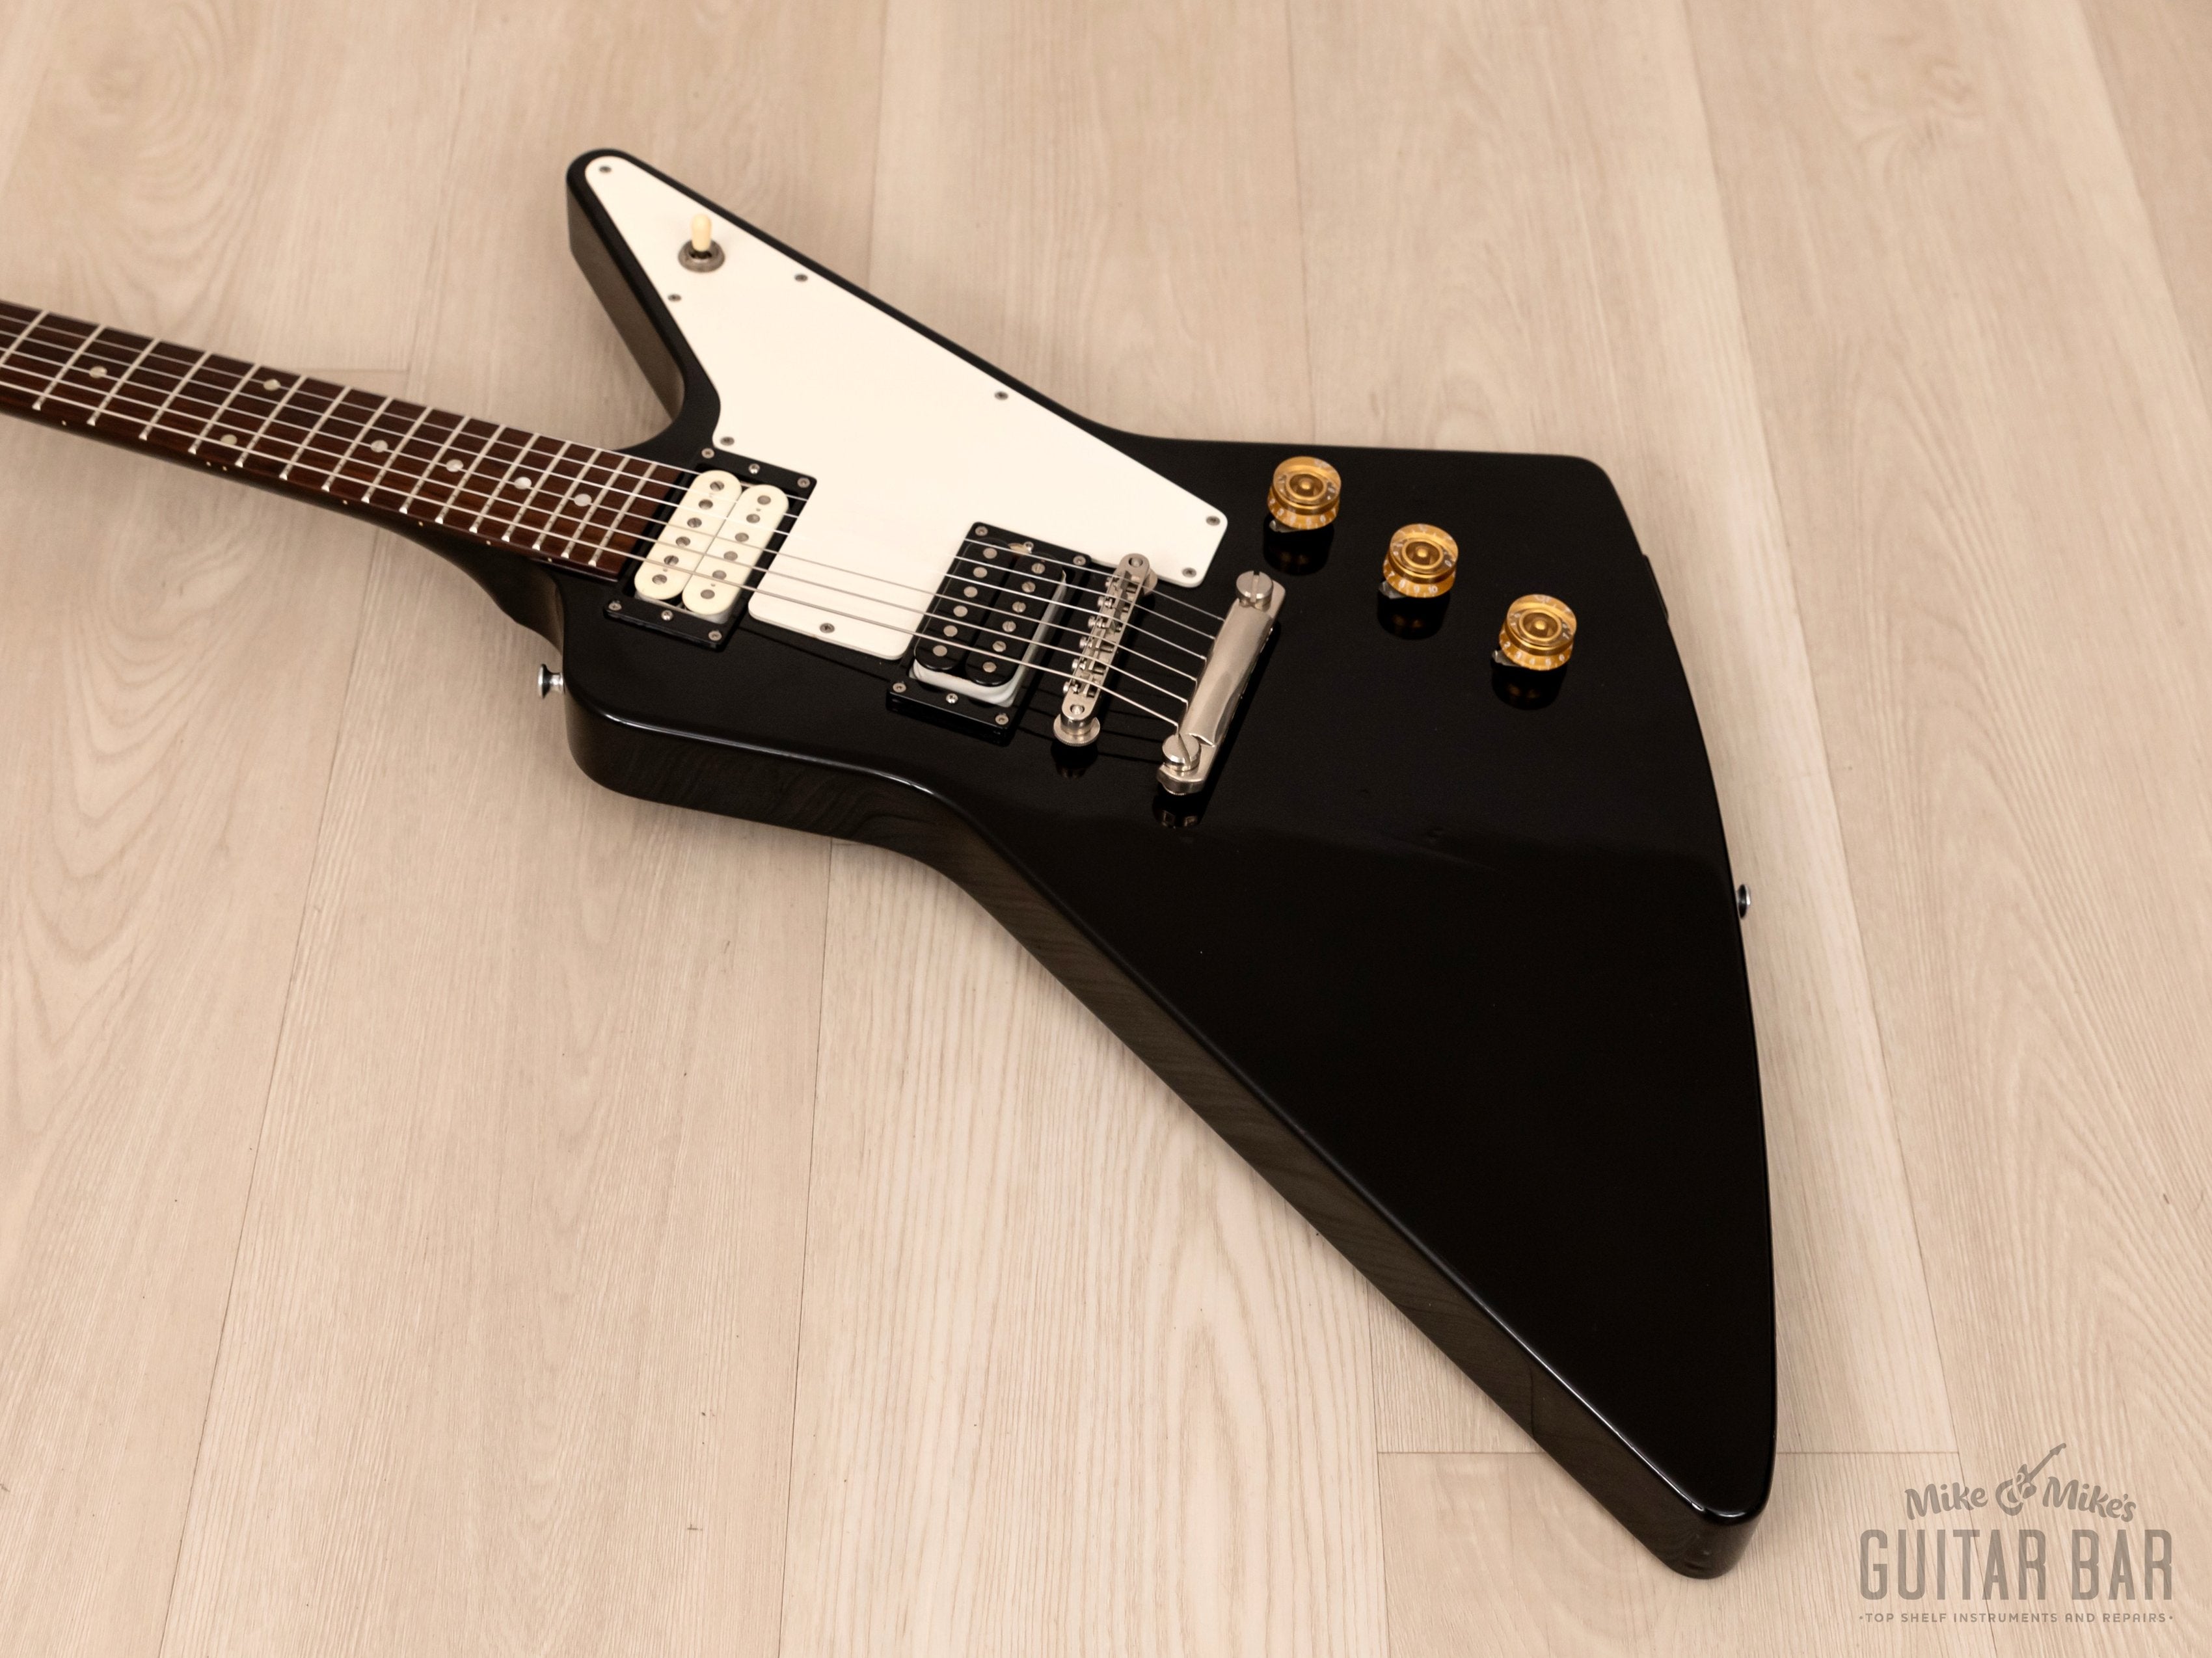 1995 Orville Explorer Gibson-Licensed Guitar Ebony, 100% Original, Japan Terada